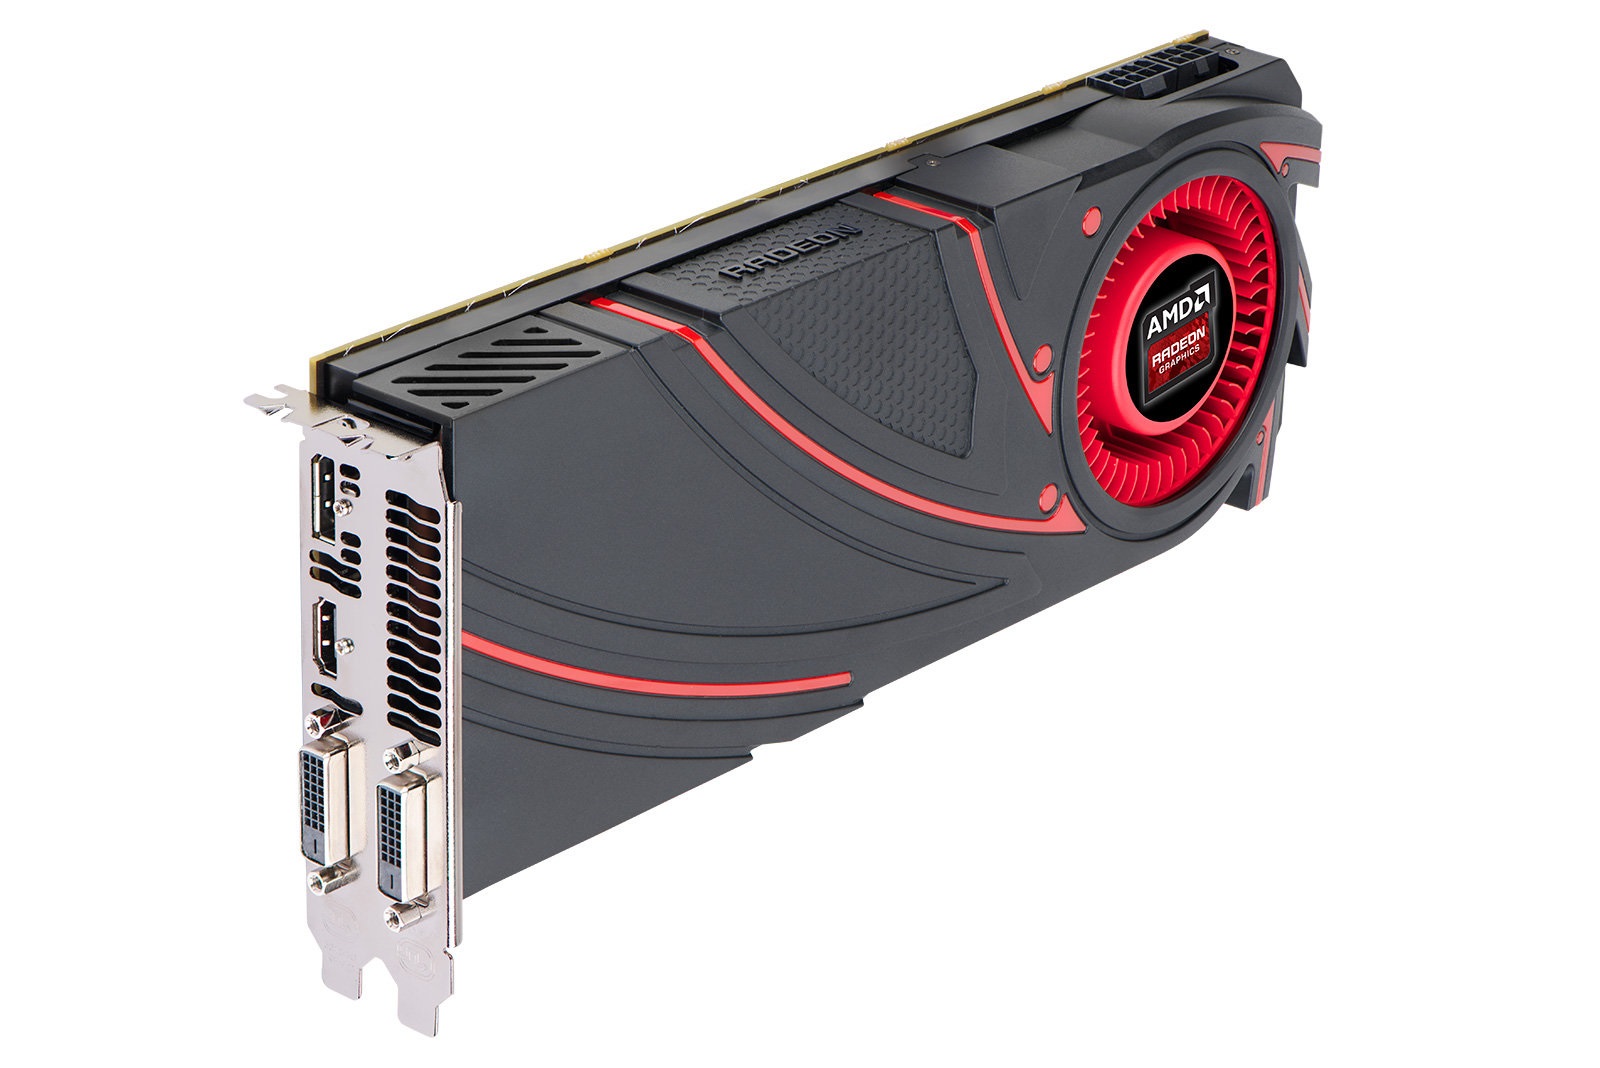 Immagine pubblicata in relazione al seguente contenuto: AMD annuncia la disponibilit commerciale della Radeon R9 290X | Nome immagine: news20253_Radeon-R9-290X_1.jpg